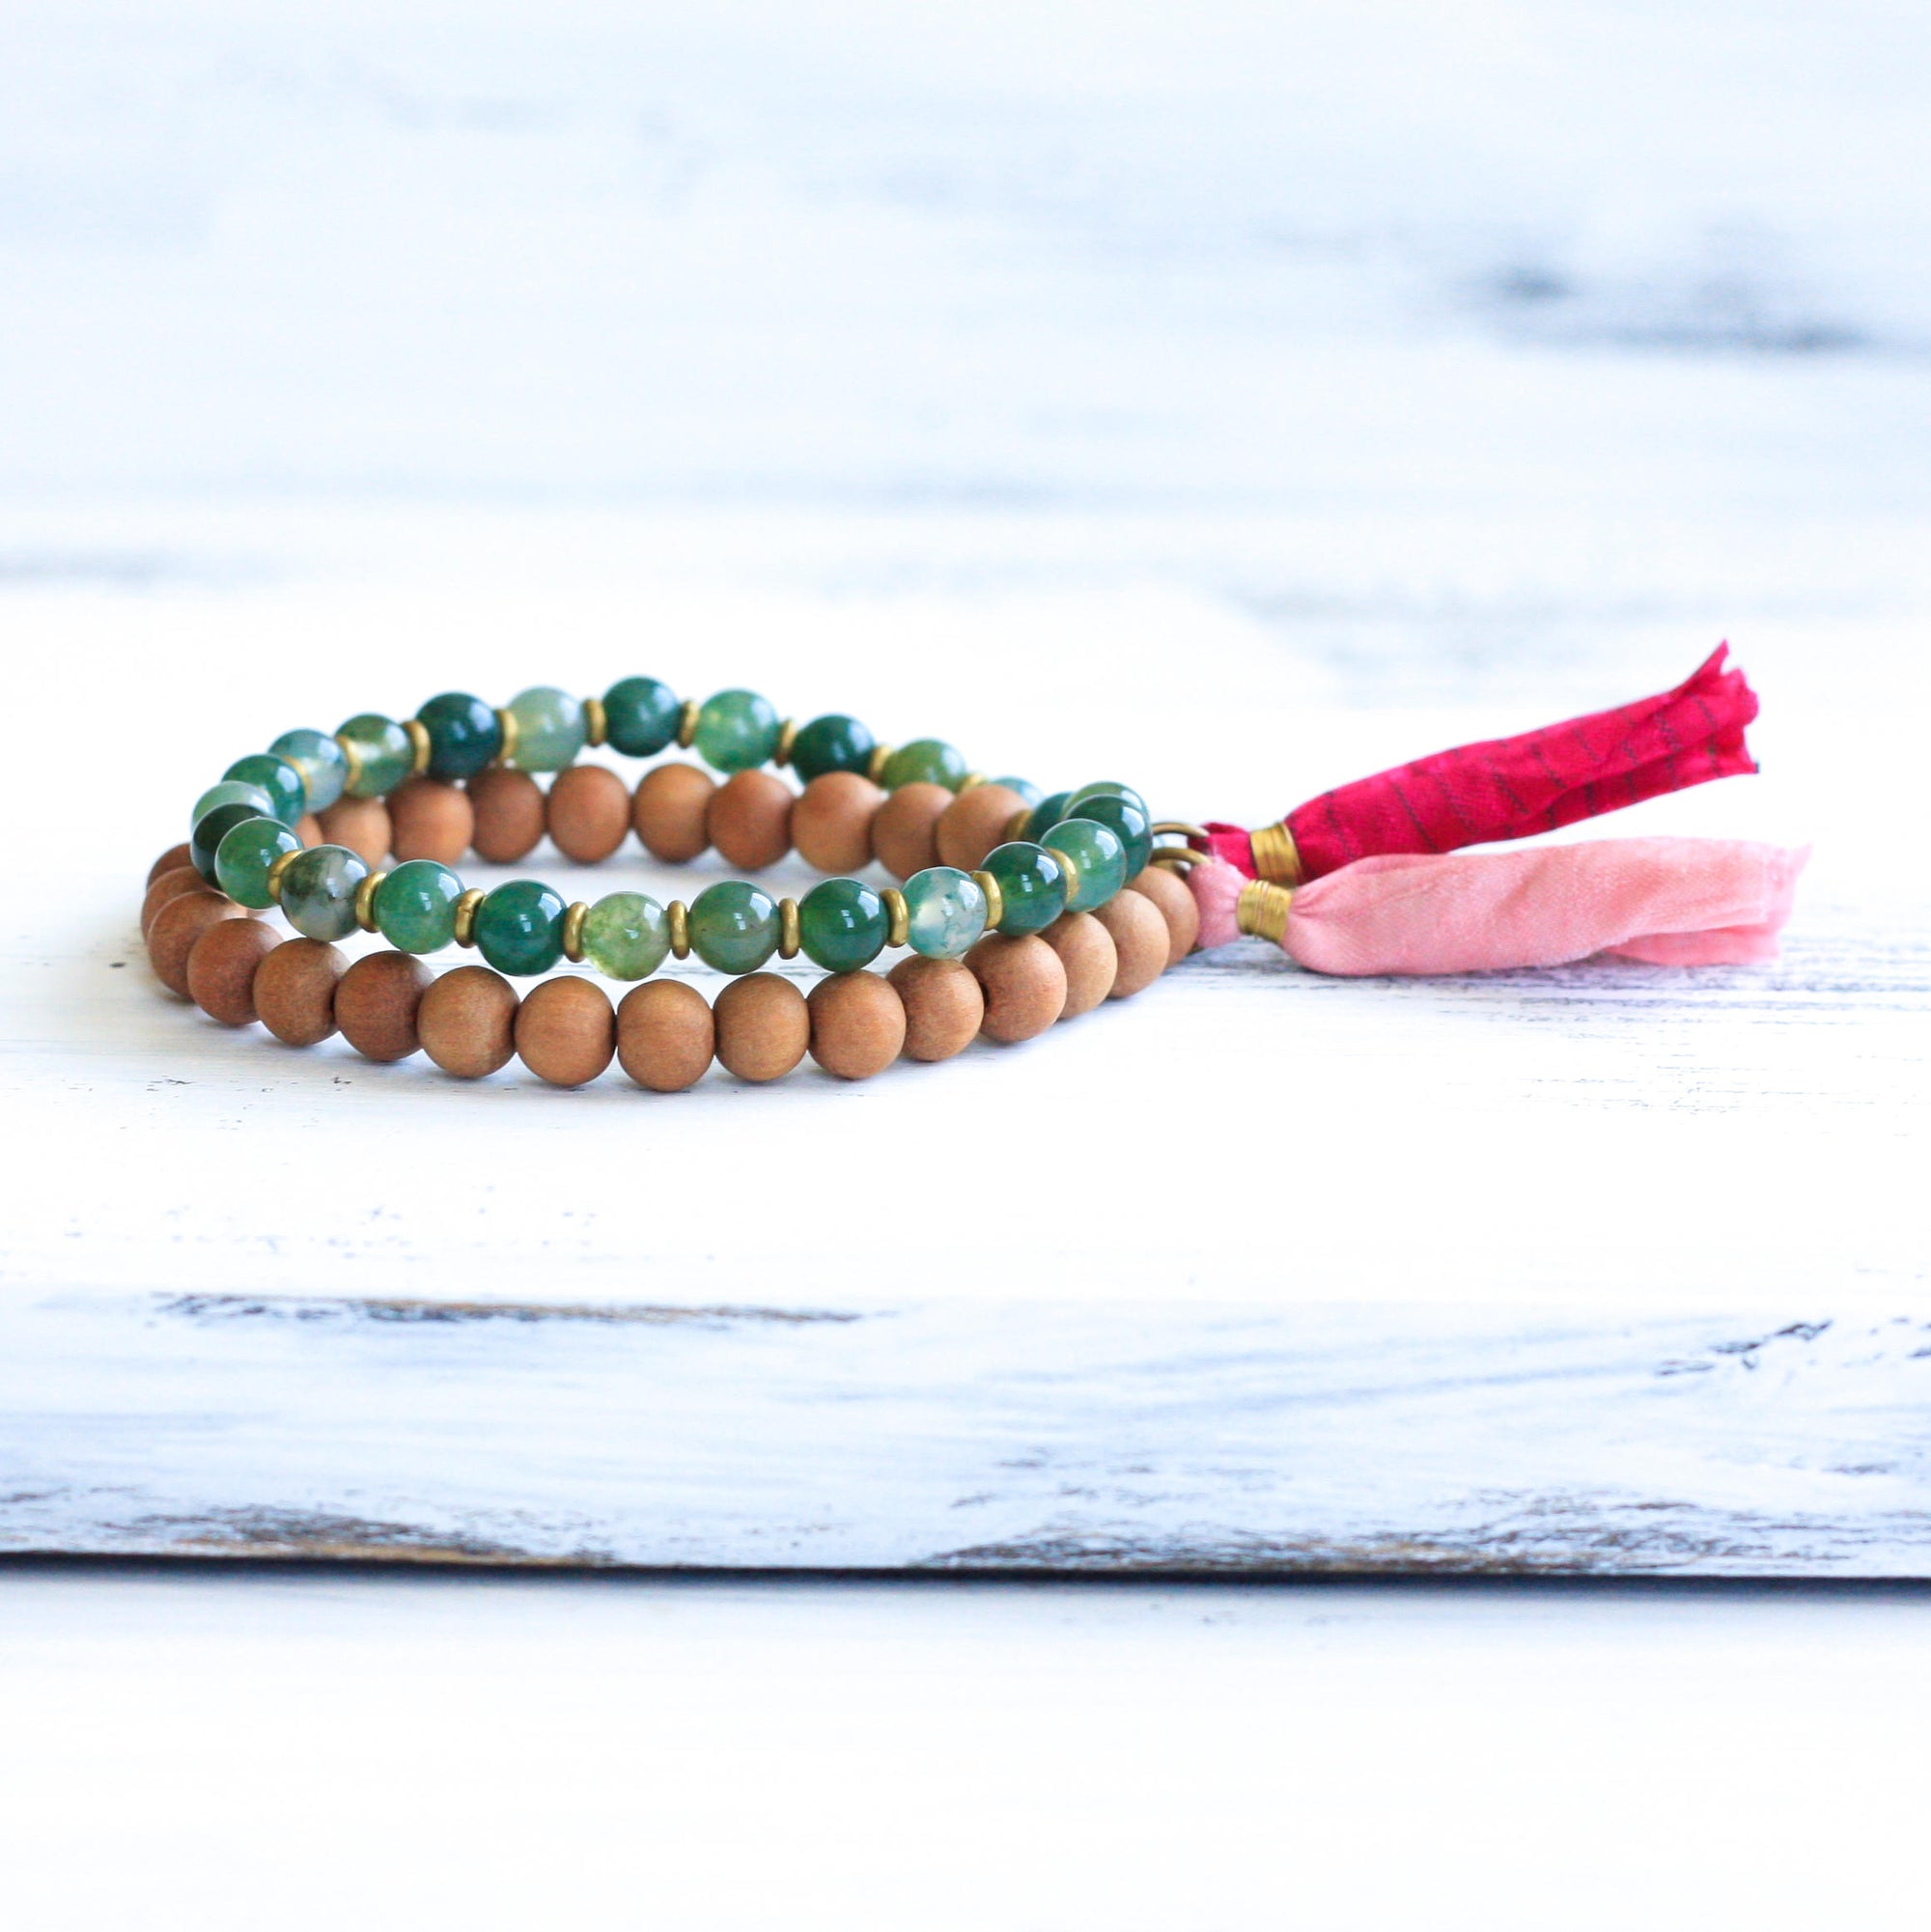 Moss Agate Sandalwood wrist mala beads, buddhist jewelry